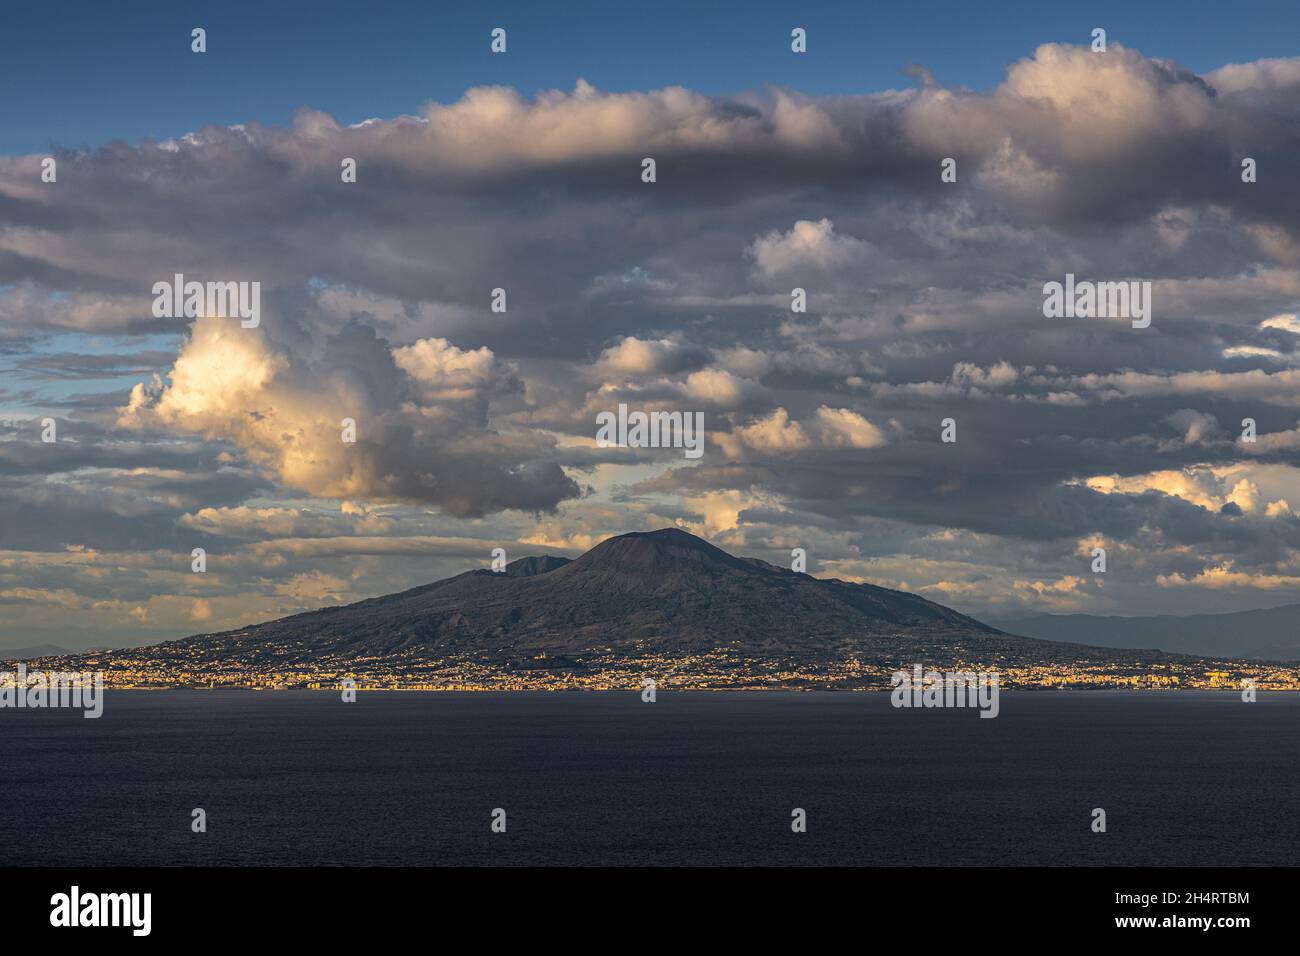 Mount Vesuvius, Naples, Italy Stock Photo